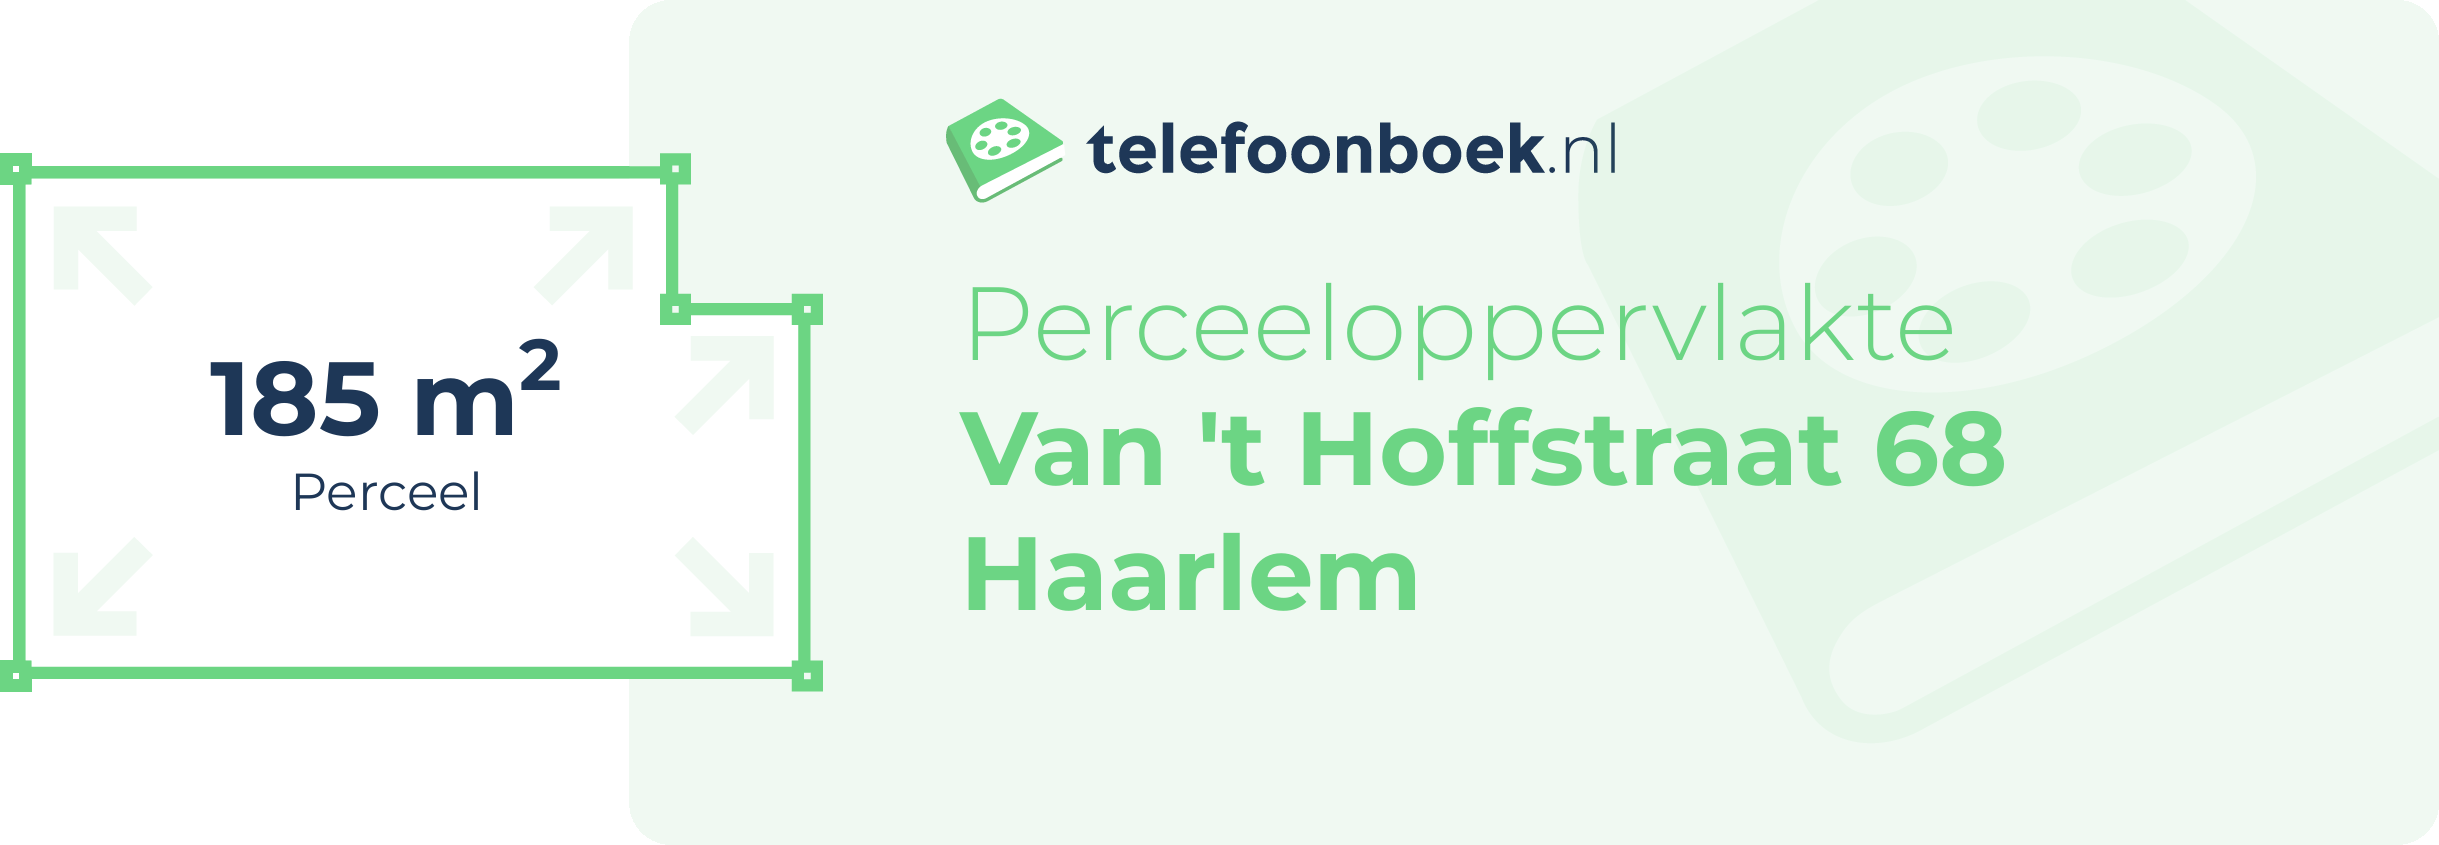 Perceeloppervlakte Van 't Hoffstraat 68 Haarlem